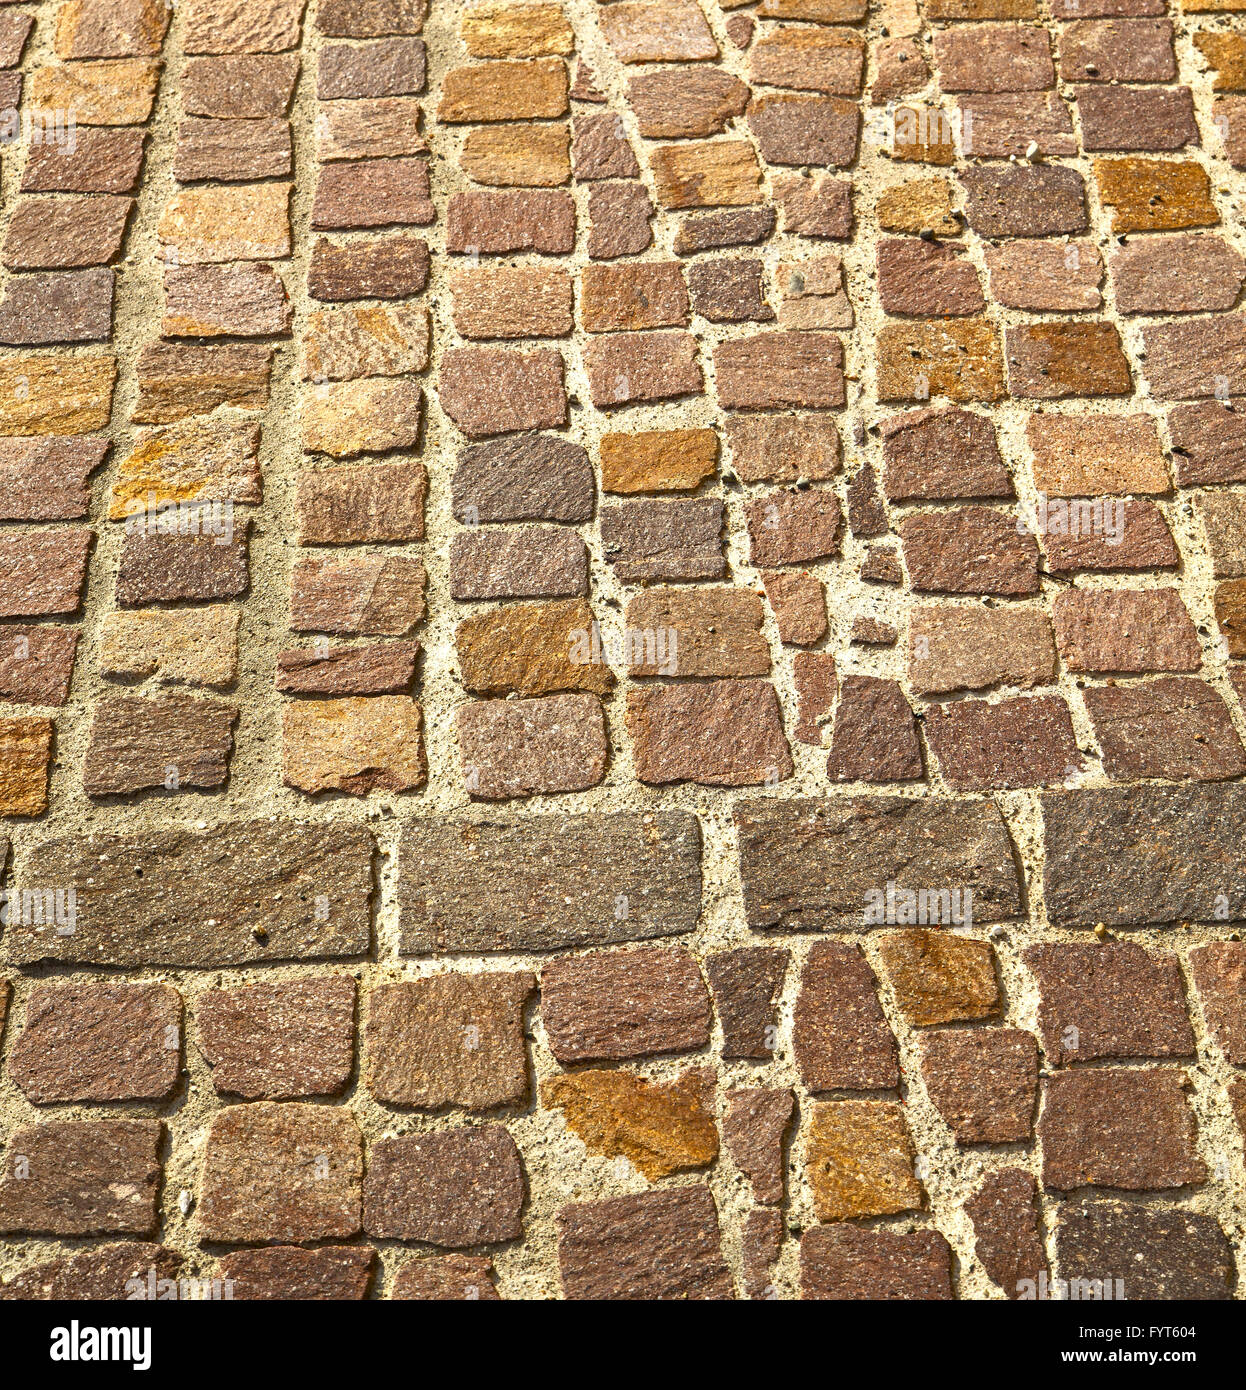 brick in   varano borghi   street lombardy italy Stock Photo